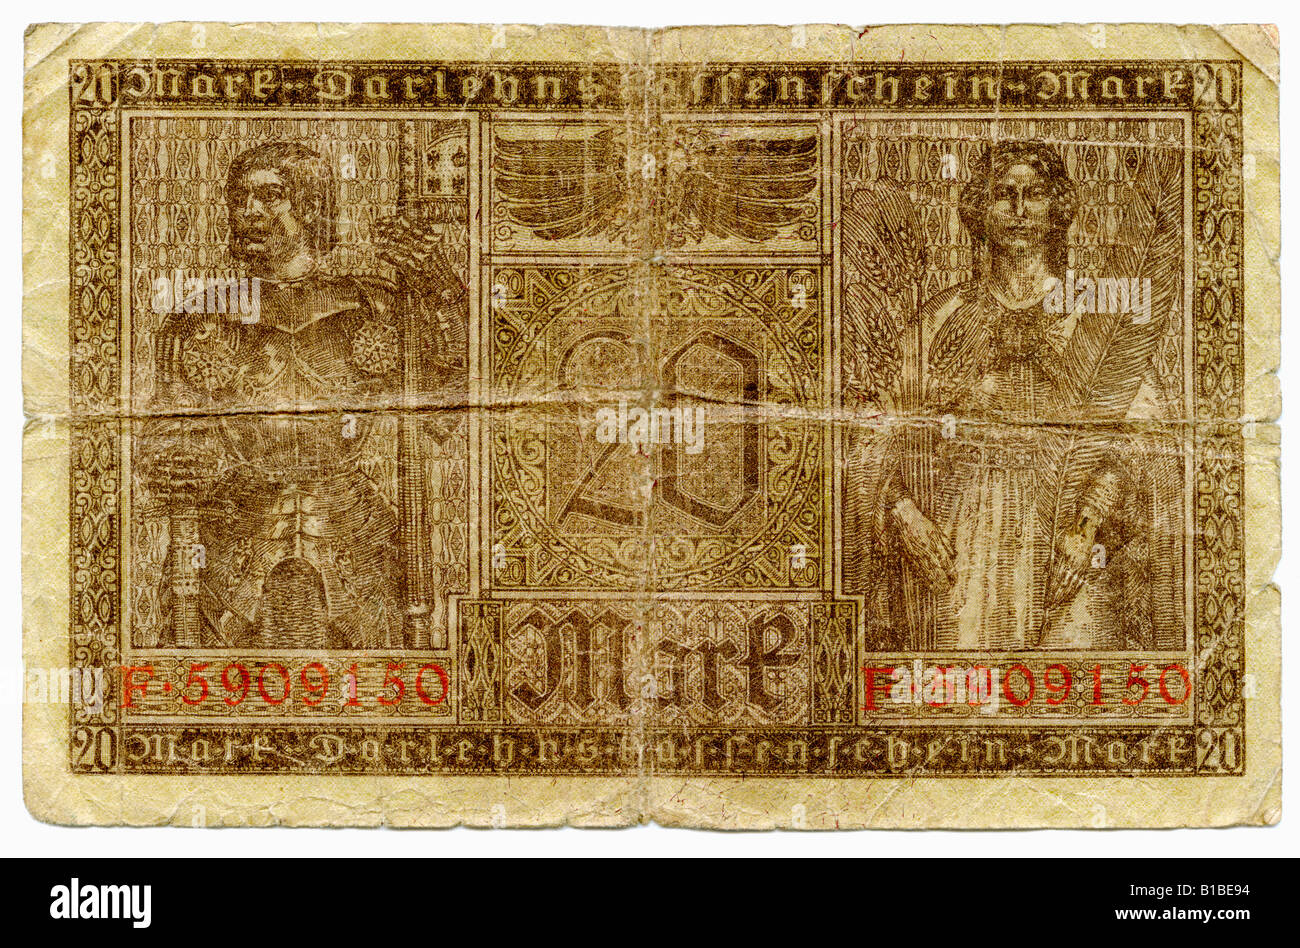 Alte deutsche Reichsmark Banknote, close-up Stockfoto